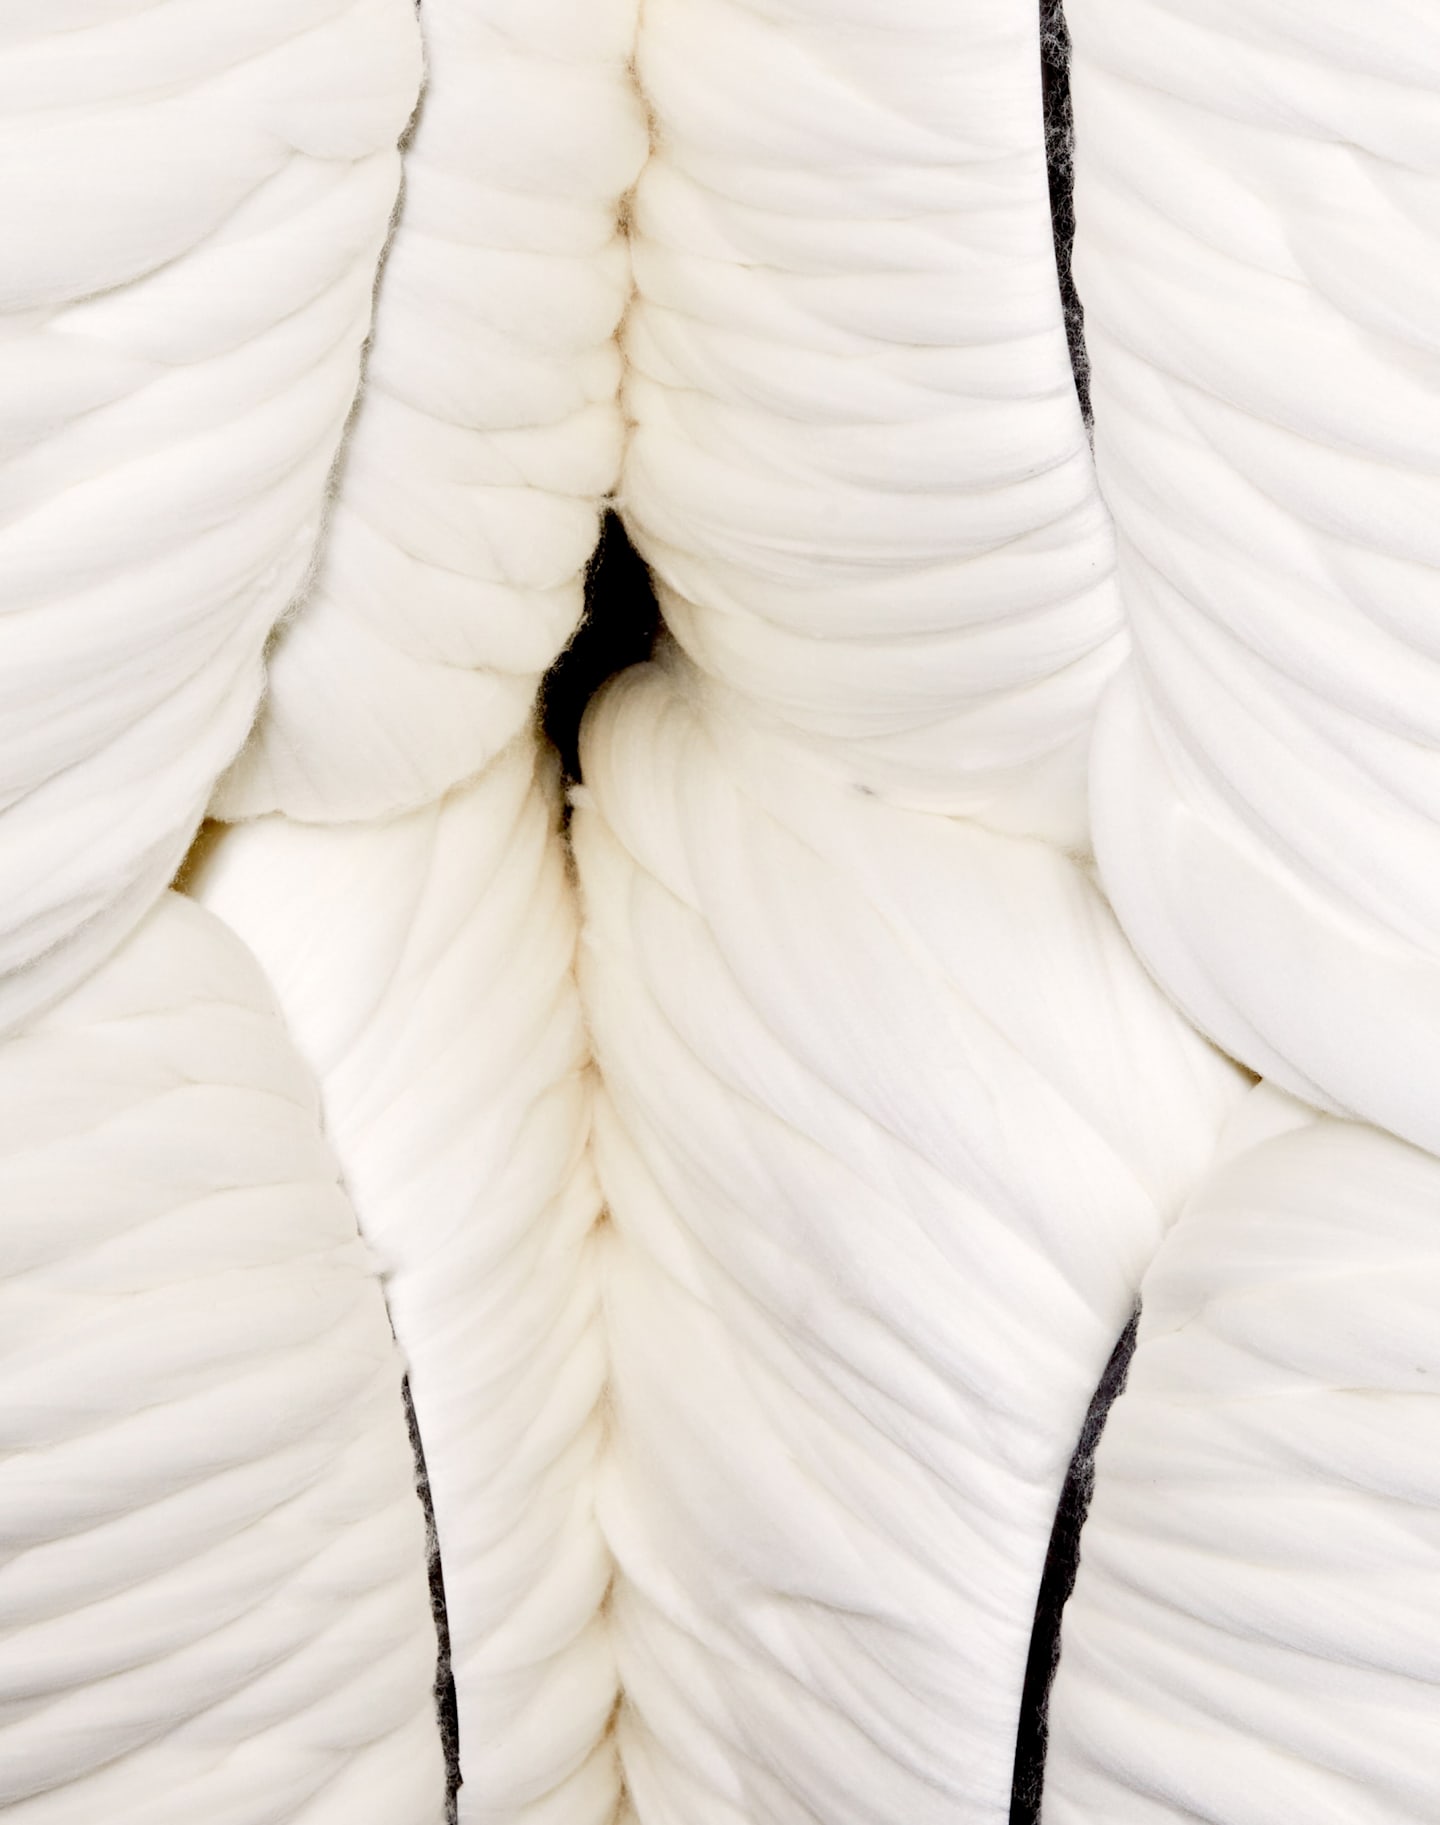 Image de laine brute écrue avant l'étape de la filature. 